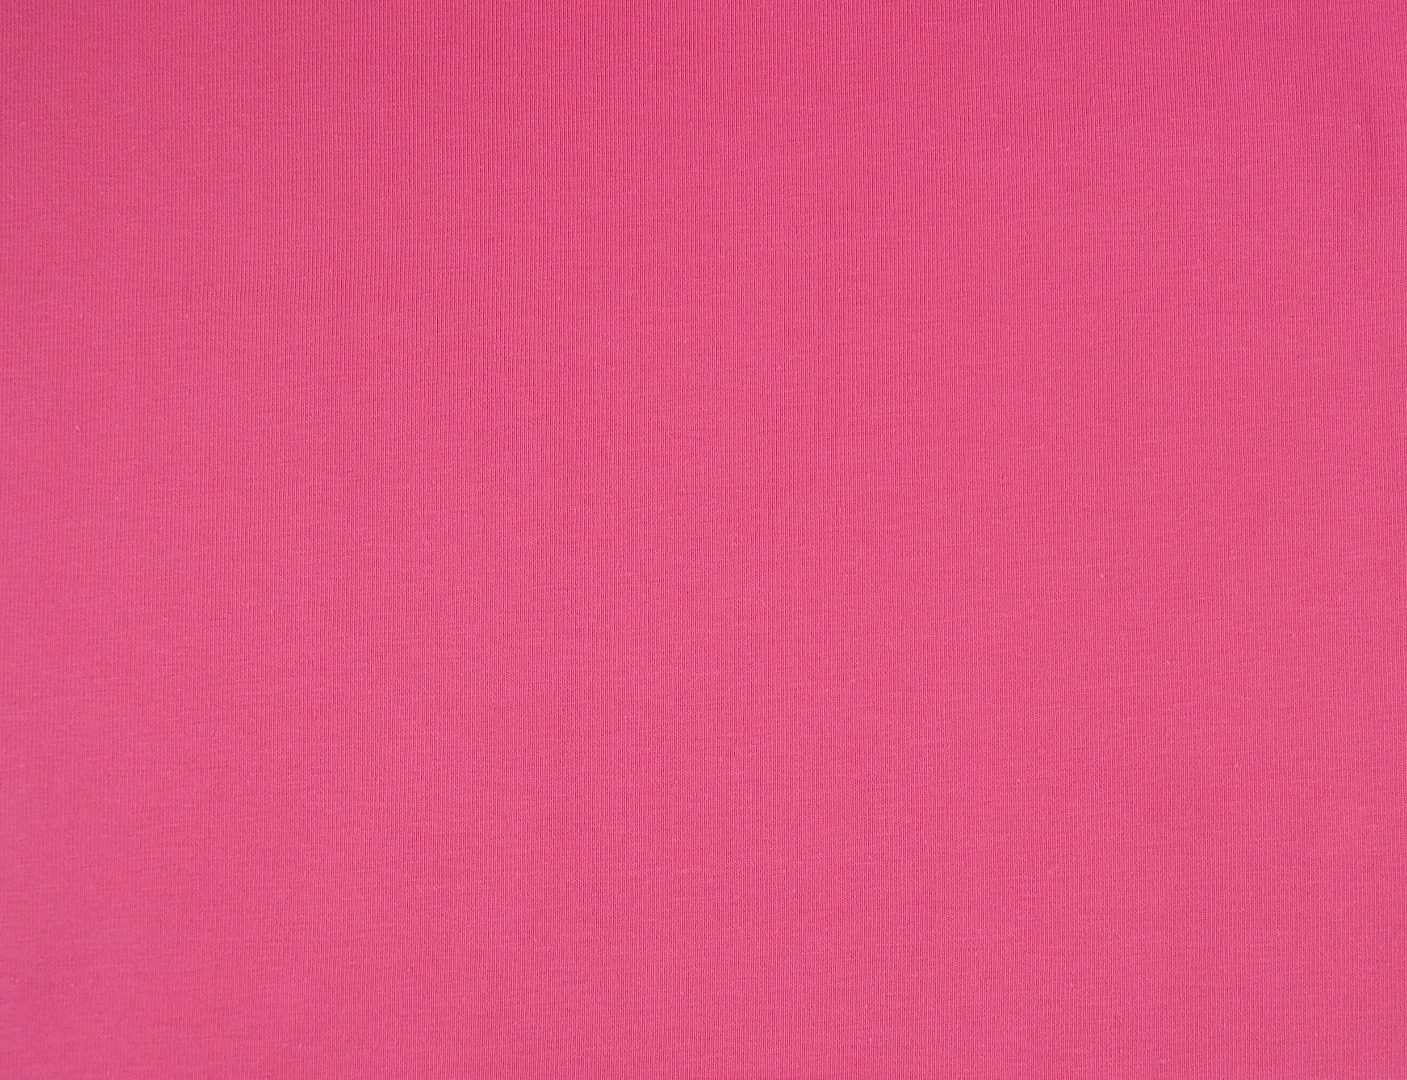 Jersey 1080 EUR/m kräftiges rosa Baumwolljersey Stoff Meterware 3